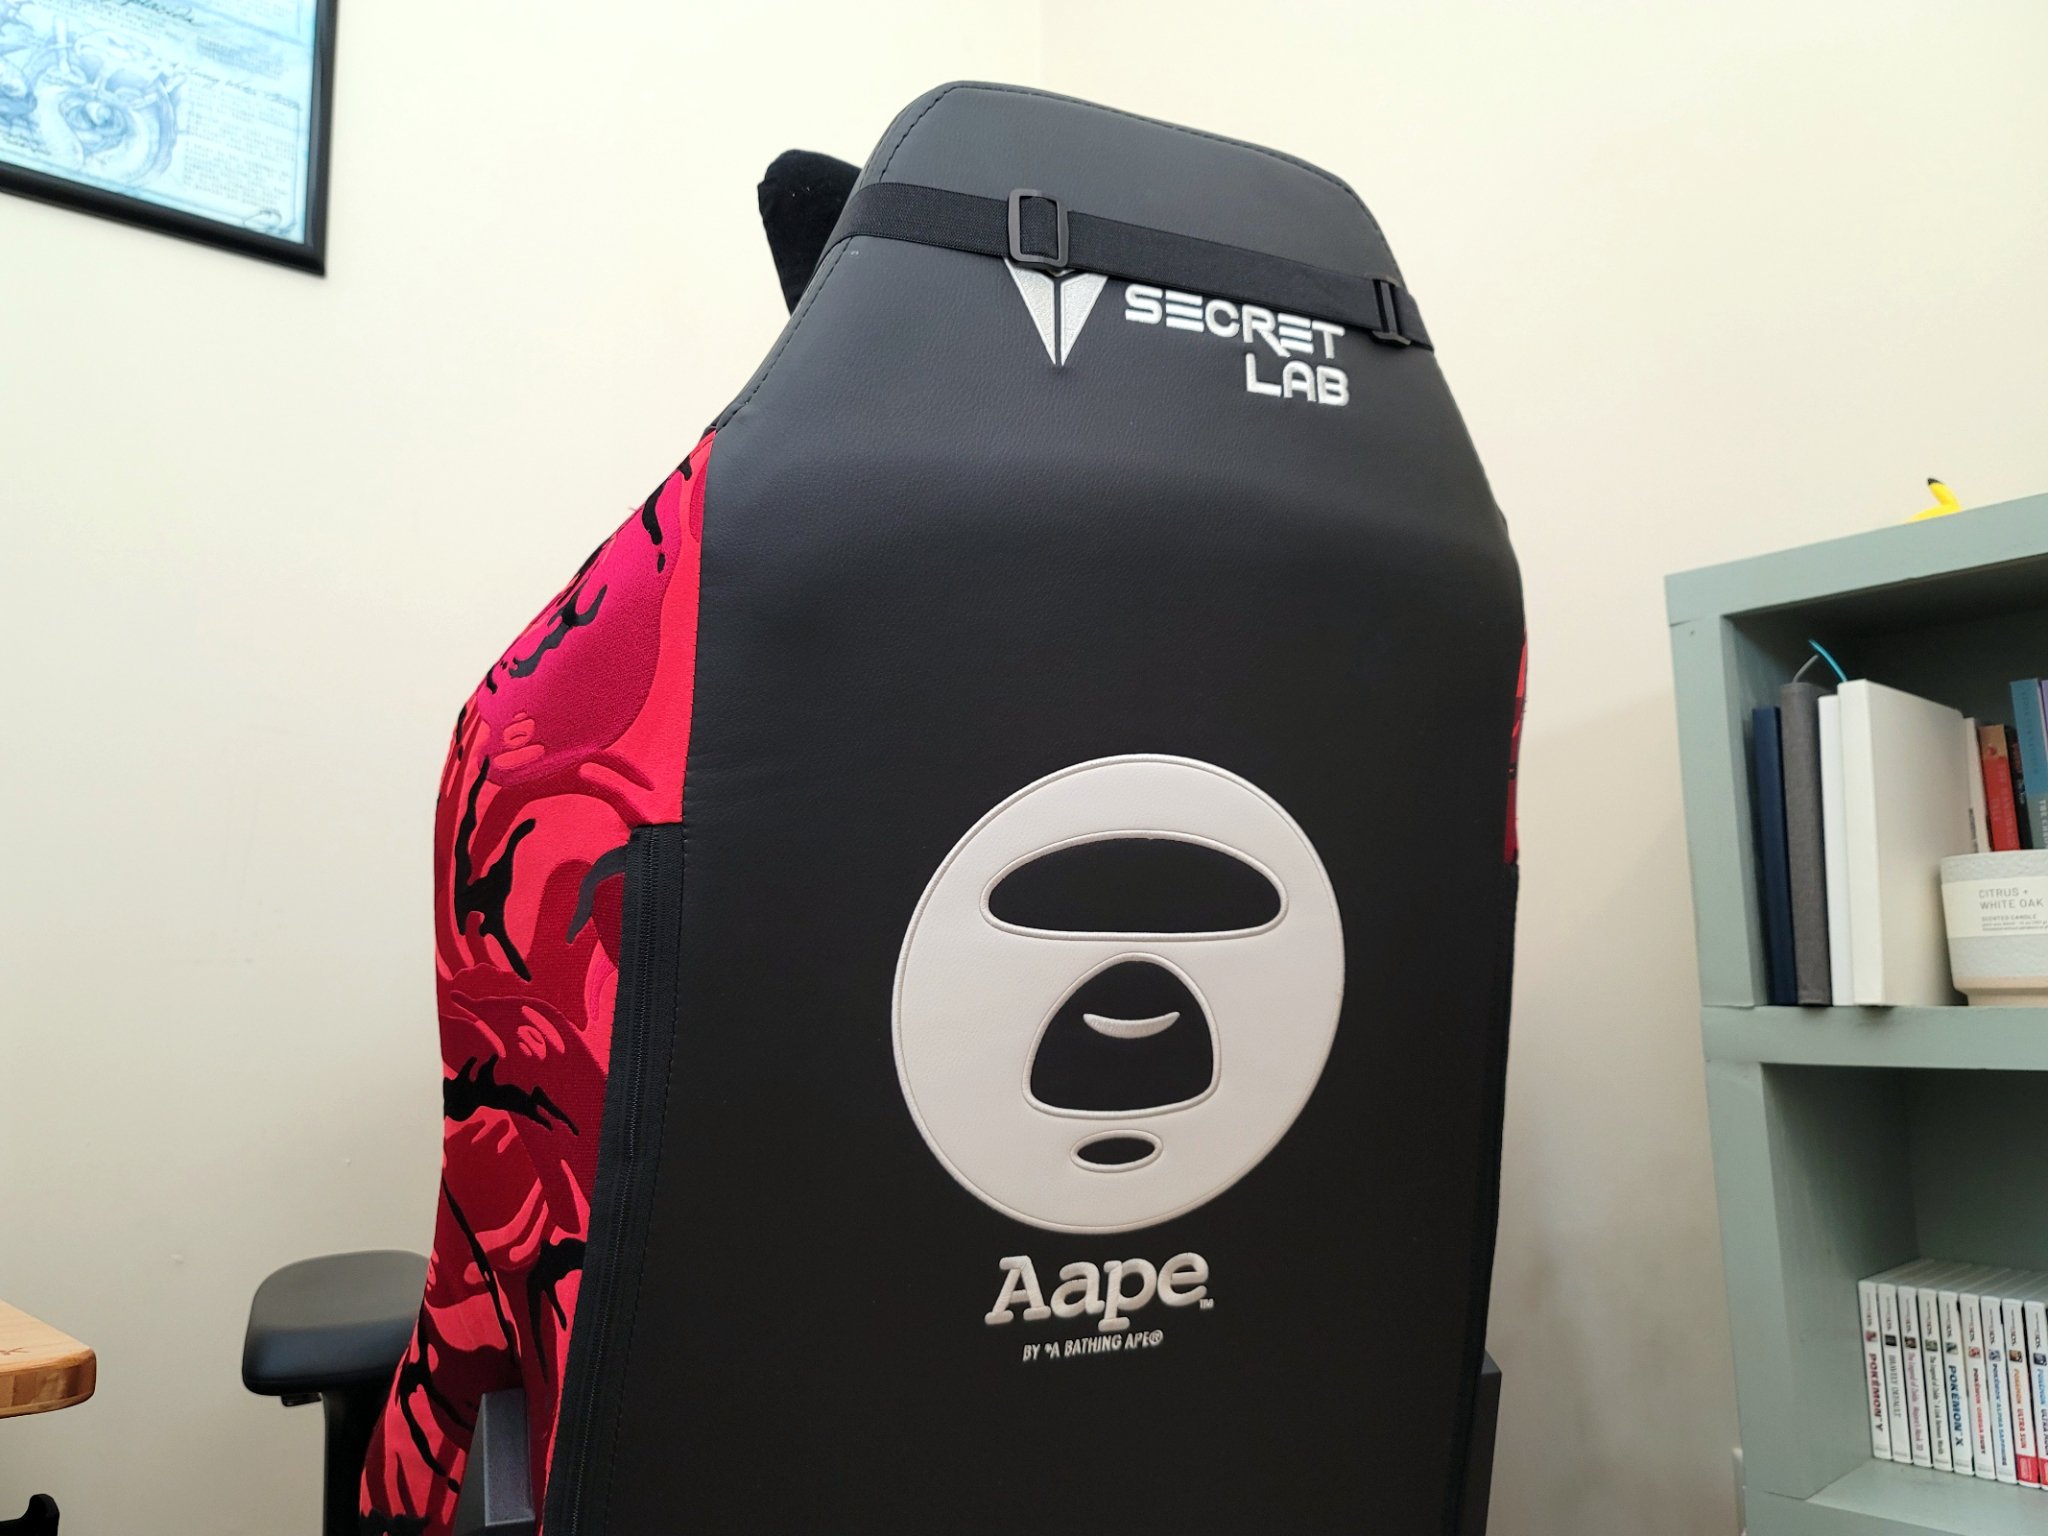 secretlab-aape-red-gaming-chair-back-logos.jpg